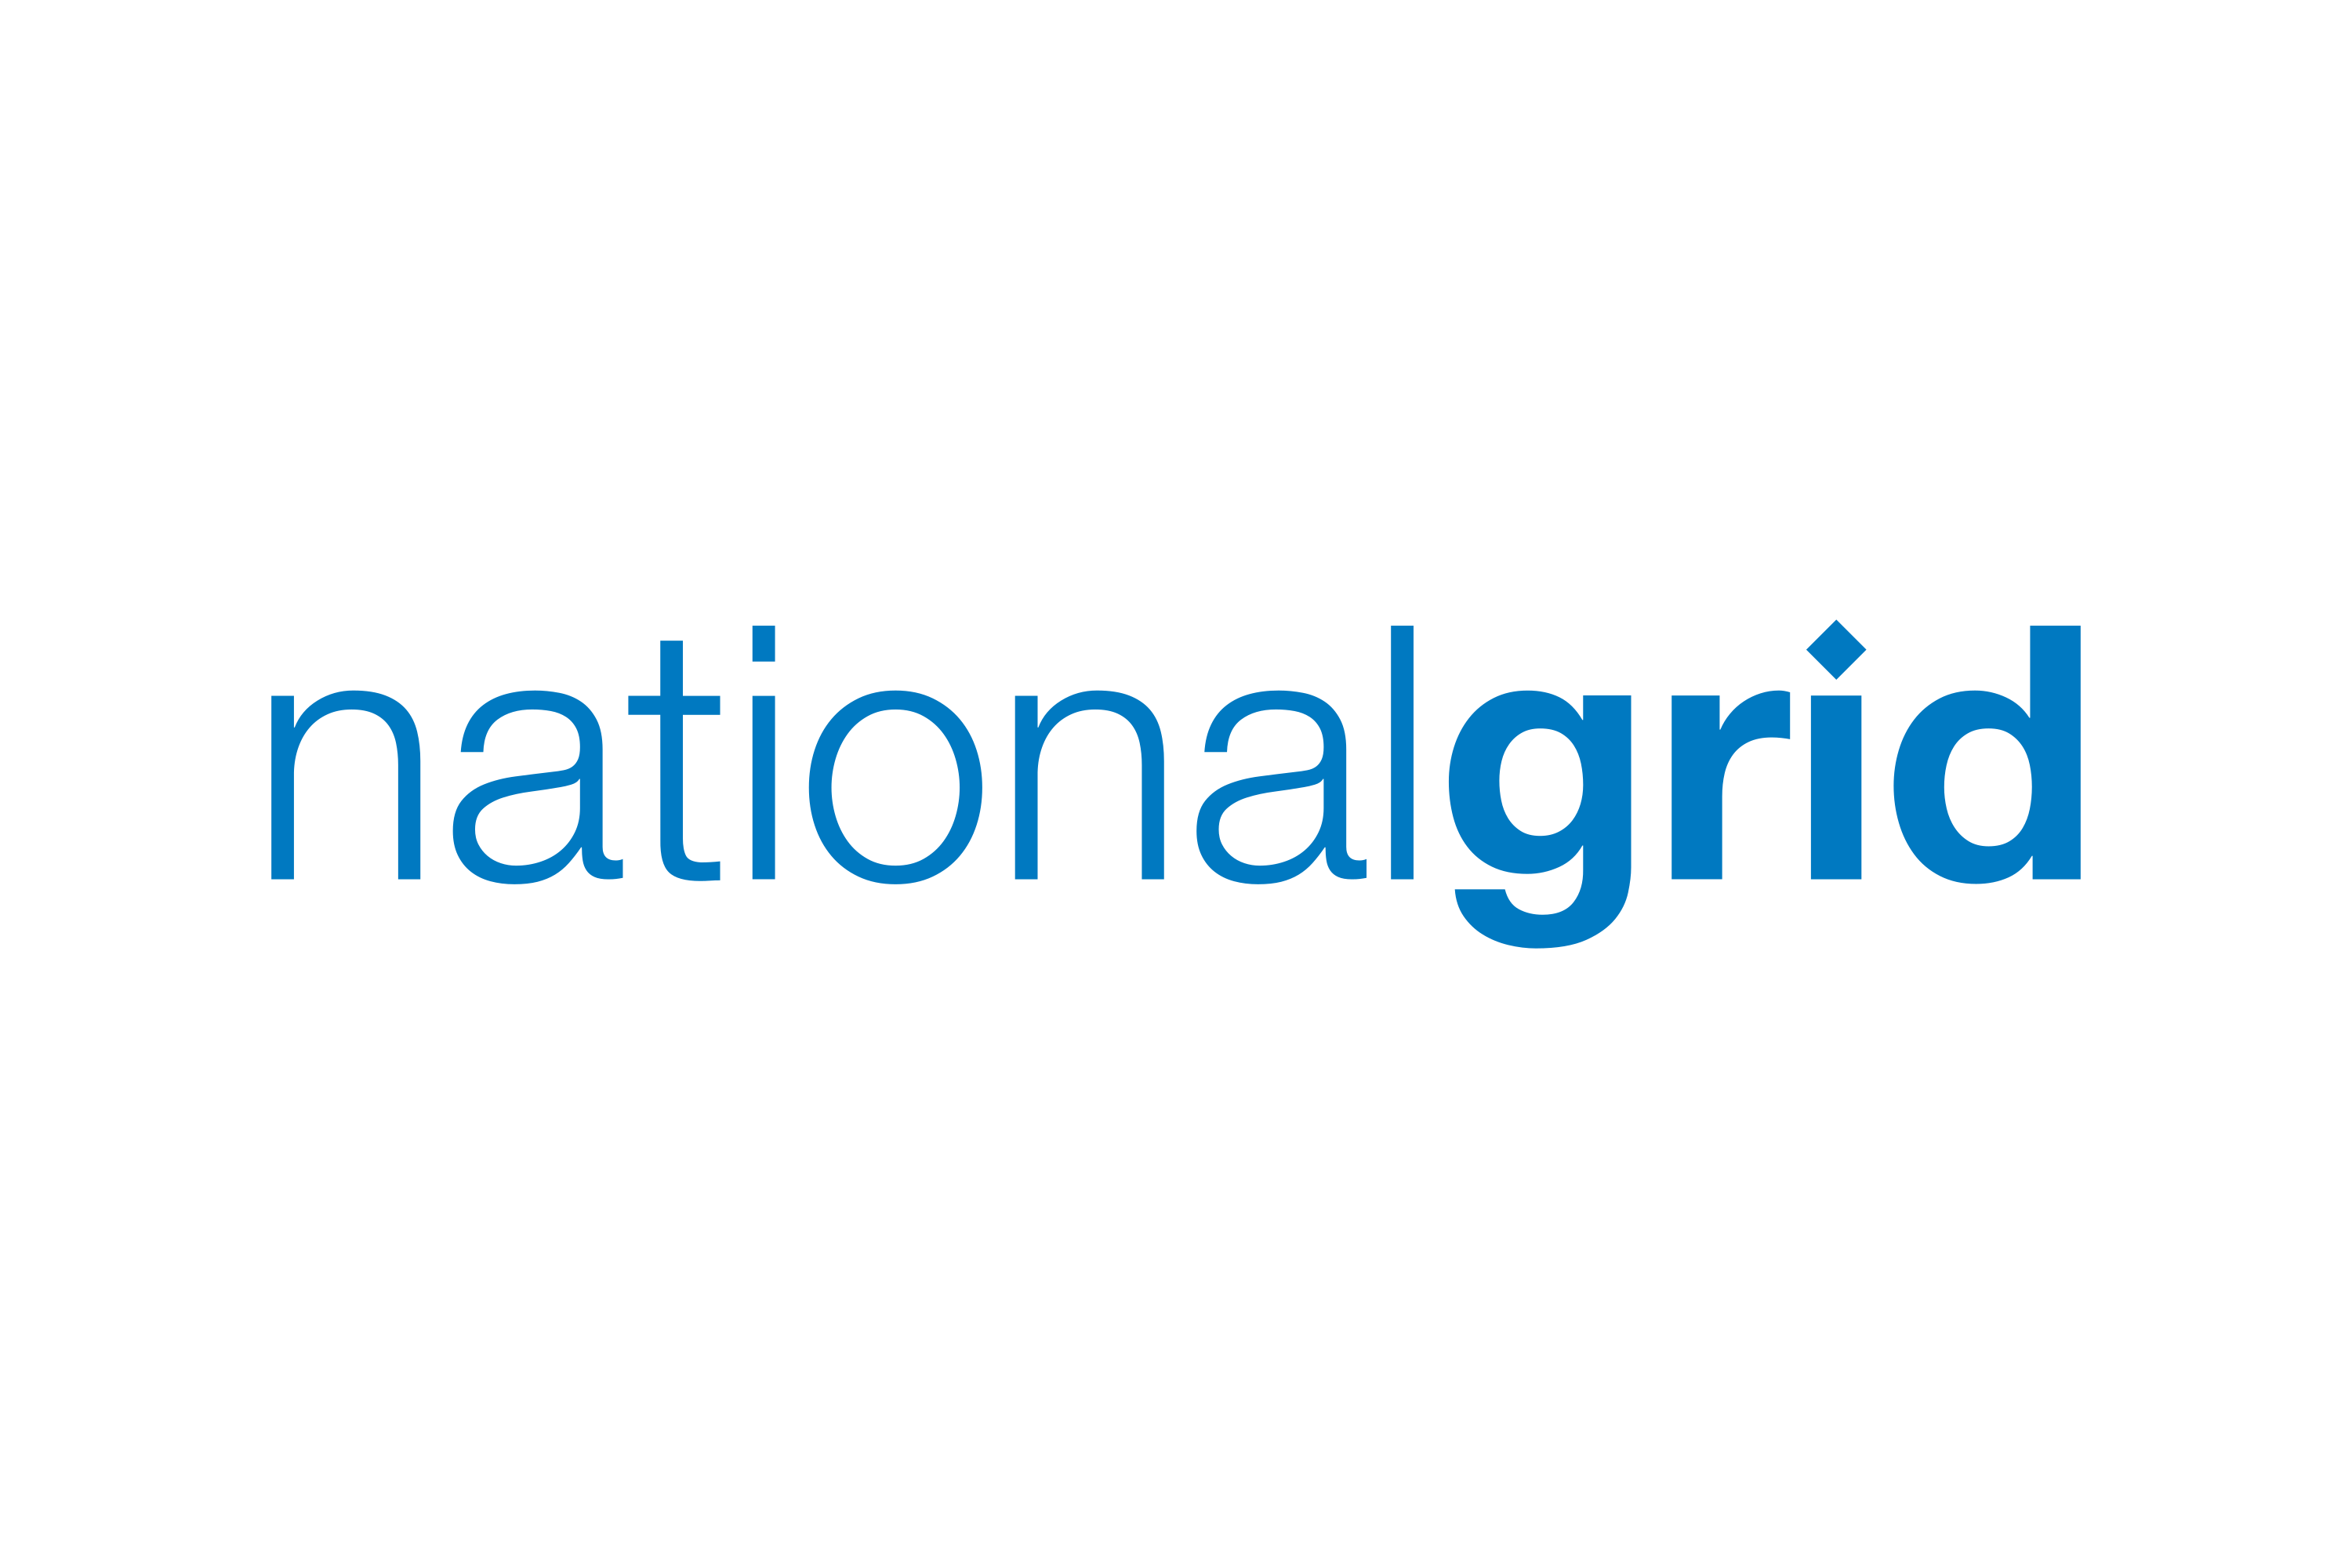 دانلود استاندارد NG خرید استاندارد National Grid, Natural Gas & Electricity استانداردهاي شبکه ملی، گاز طبیعی و برق